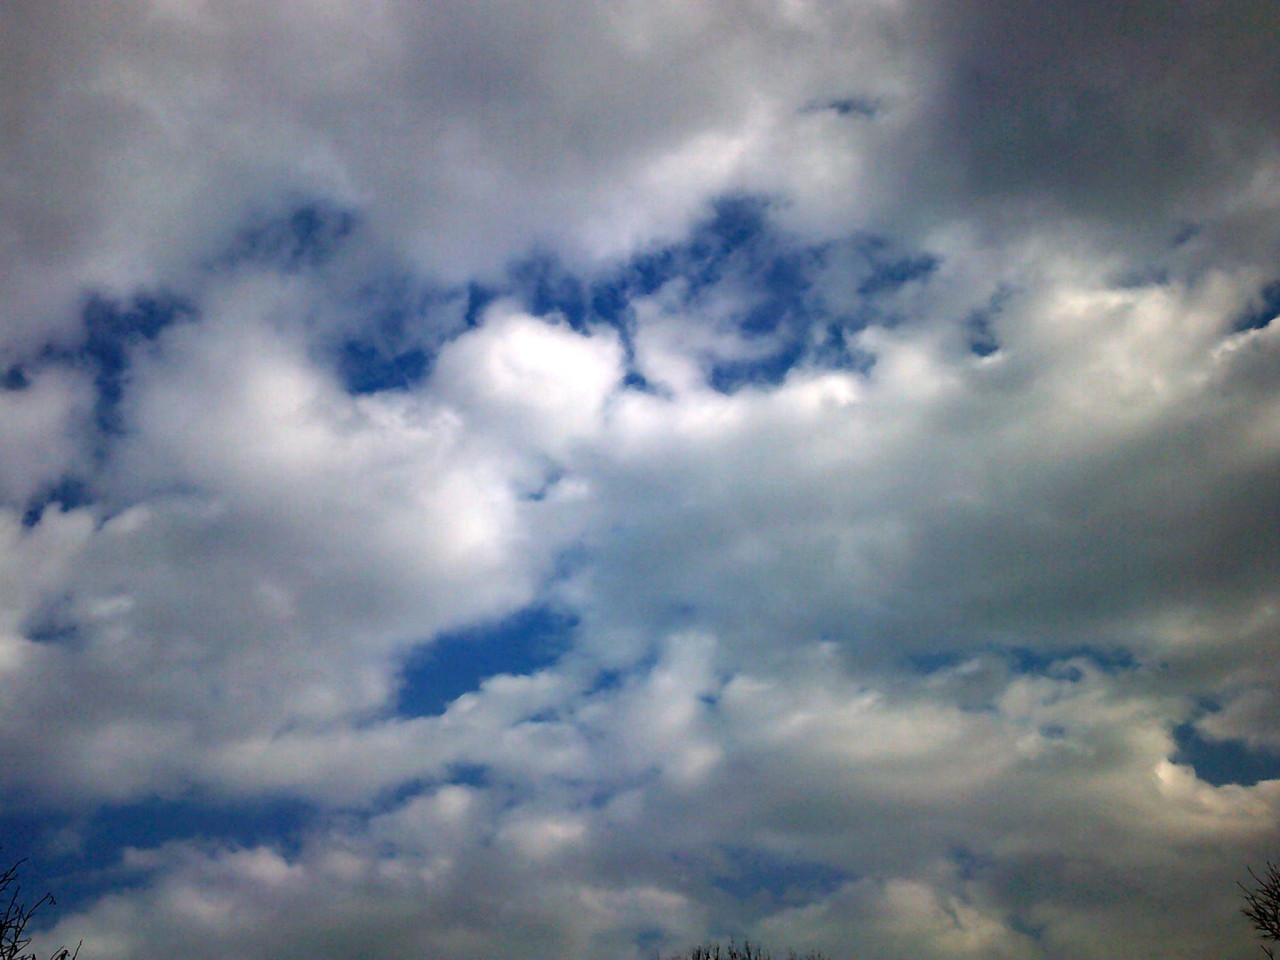 Meteo Favignana: oggi lunedì 28 Agosto nuvoloso per velature, previste forti raffiche di vento.